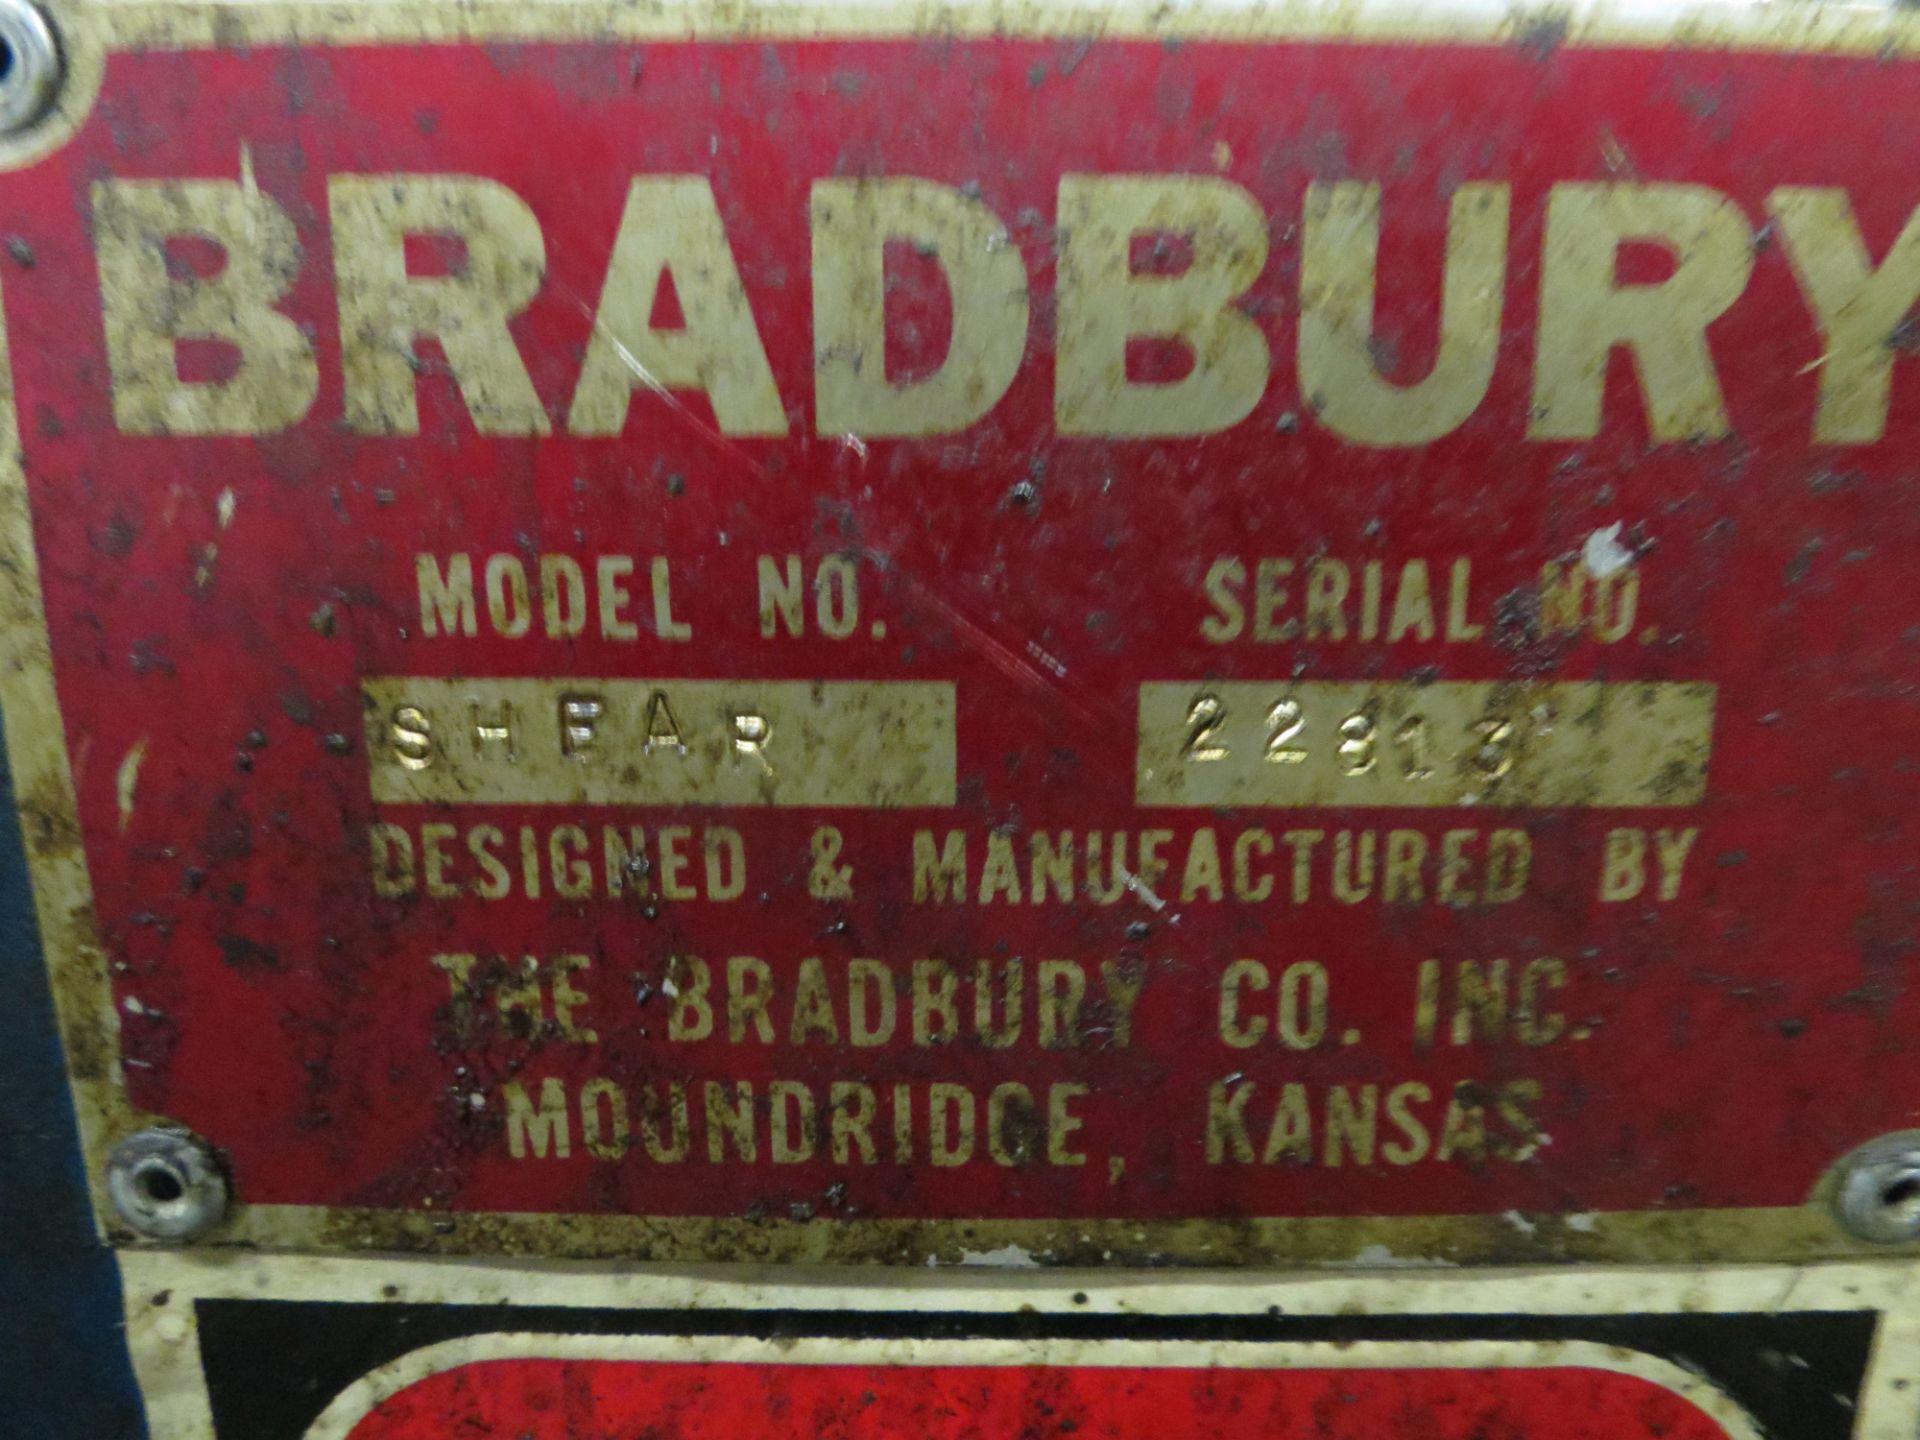 Bradbury Hydraulic Shear, 18 gauge x 48'' hyd, s/n 22813 new 1991 - Image 7 of 7